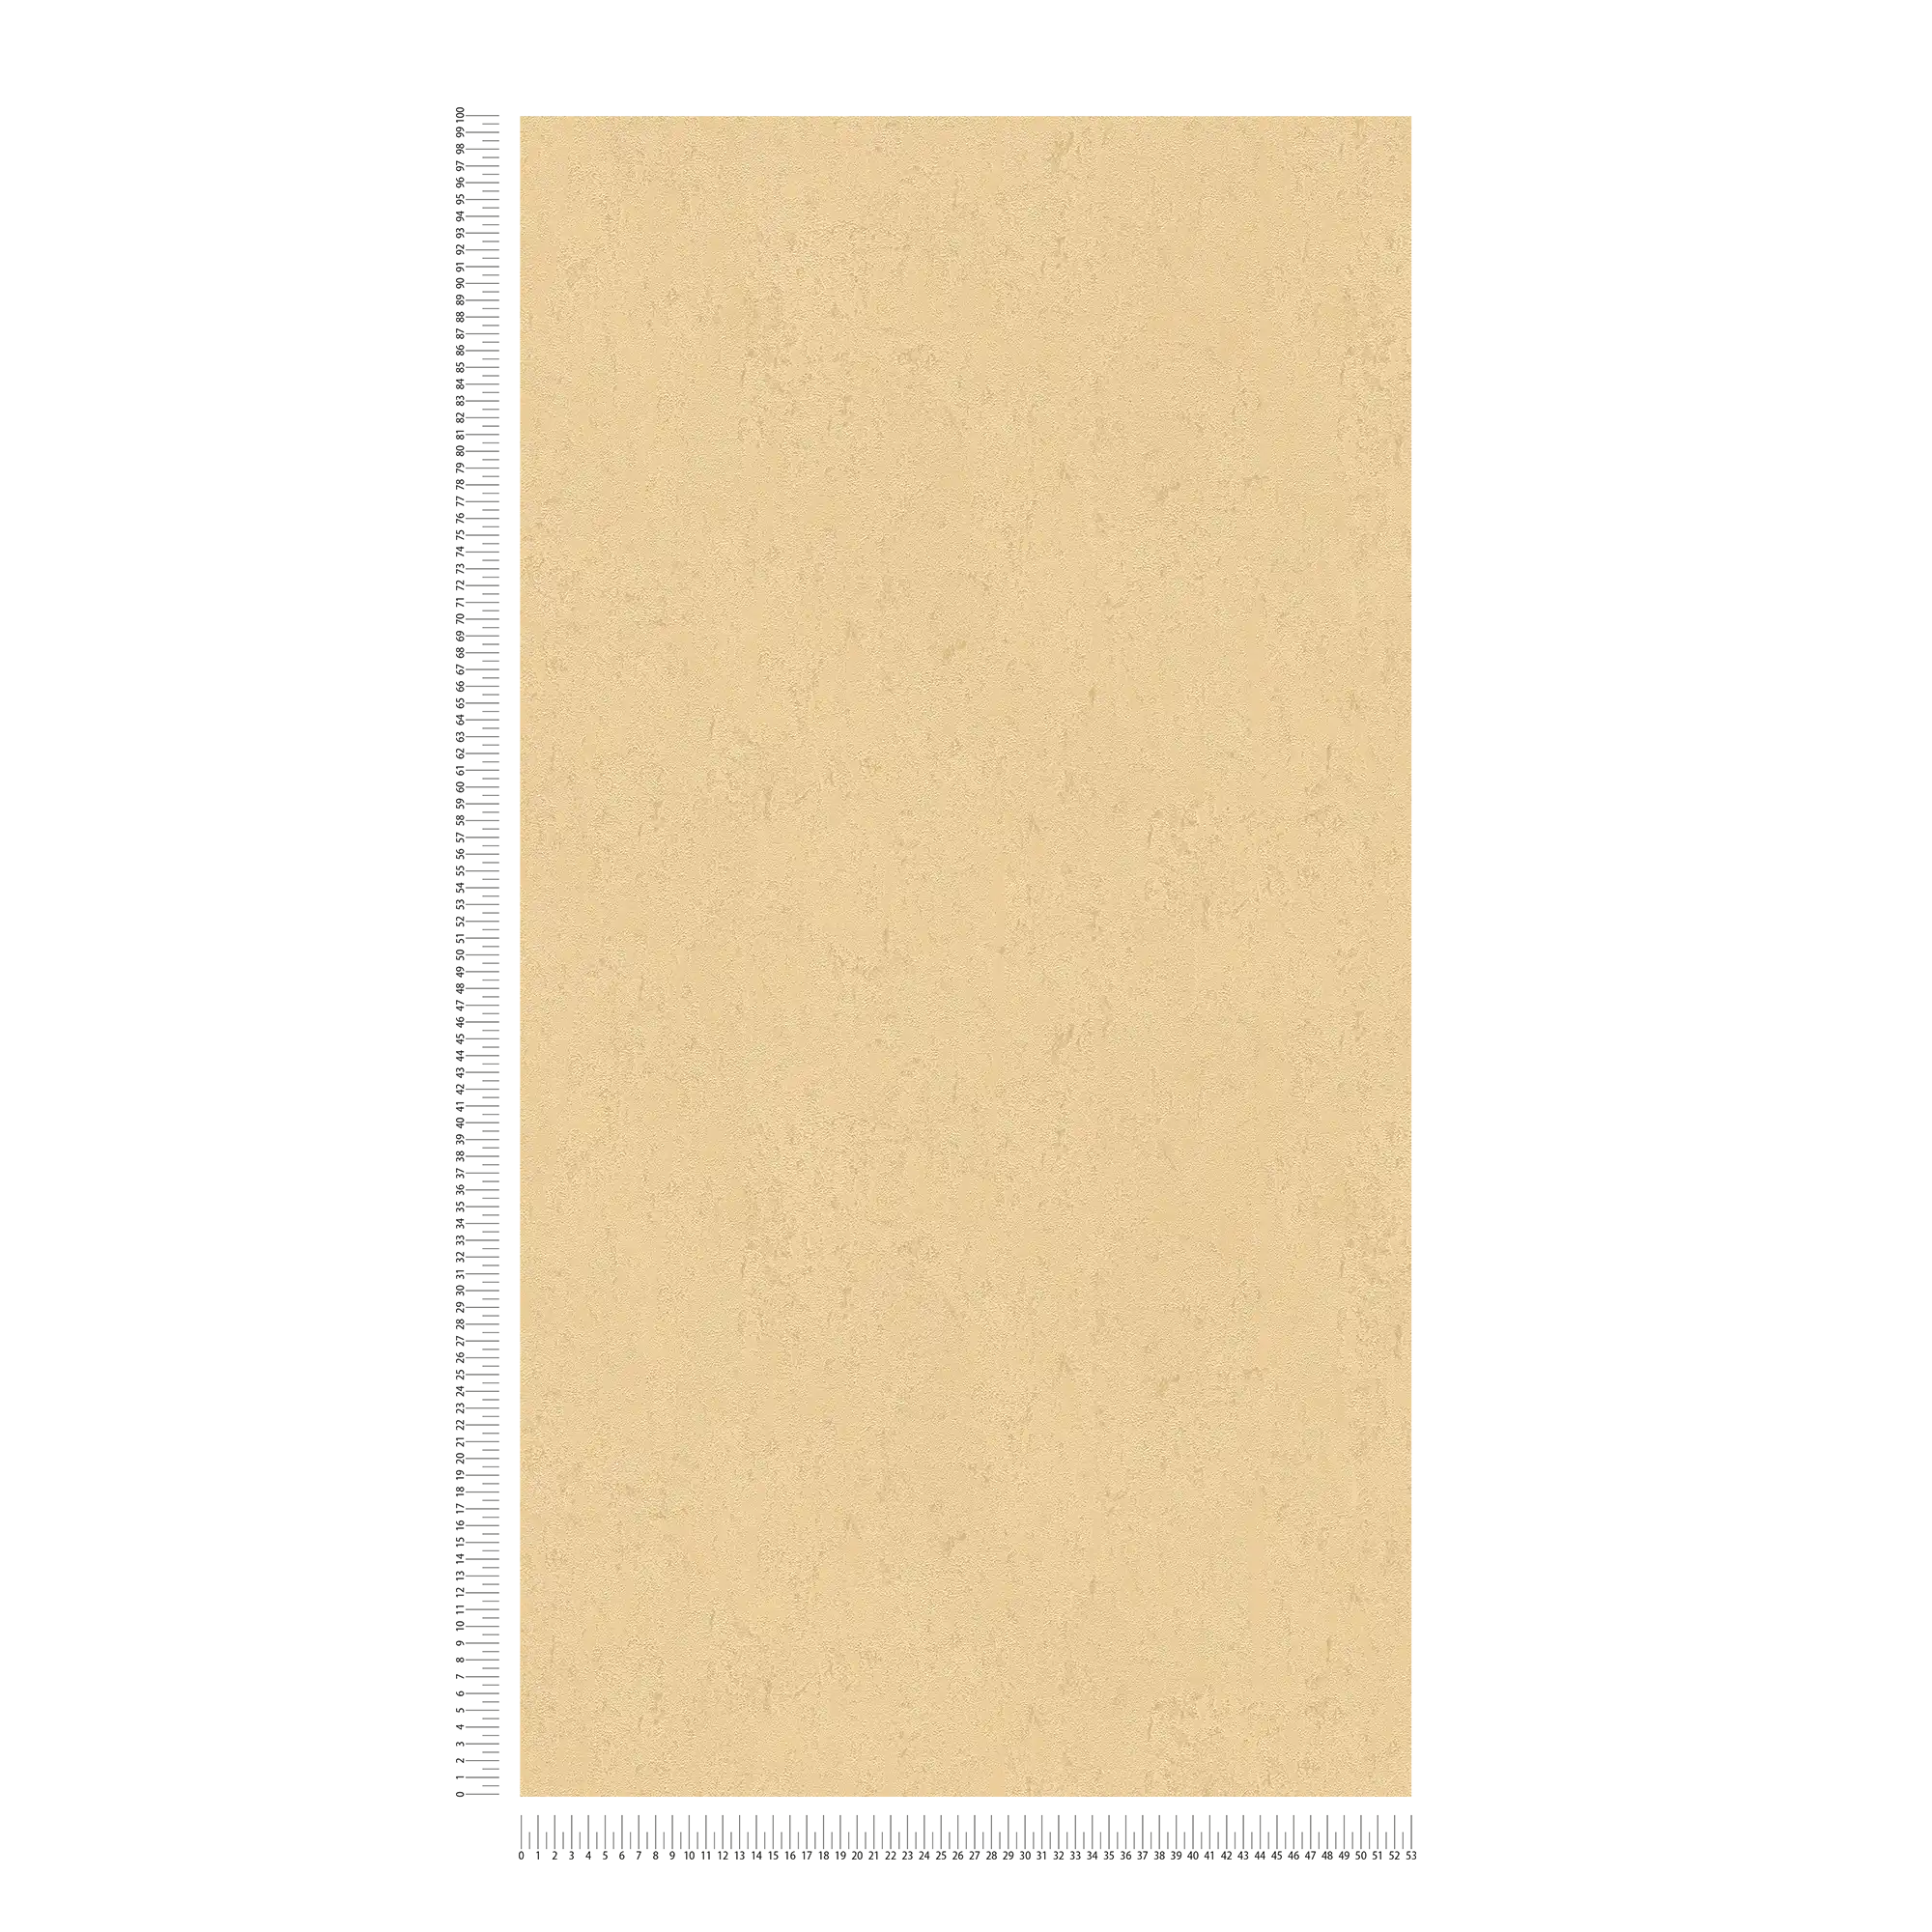             Carta da parati in tessuto non tessuto oro chiaro metallizzato uni con motivo strutturato
        